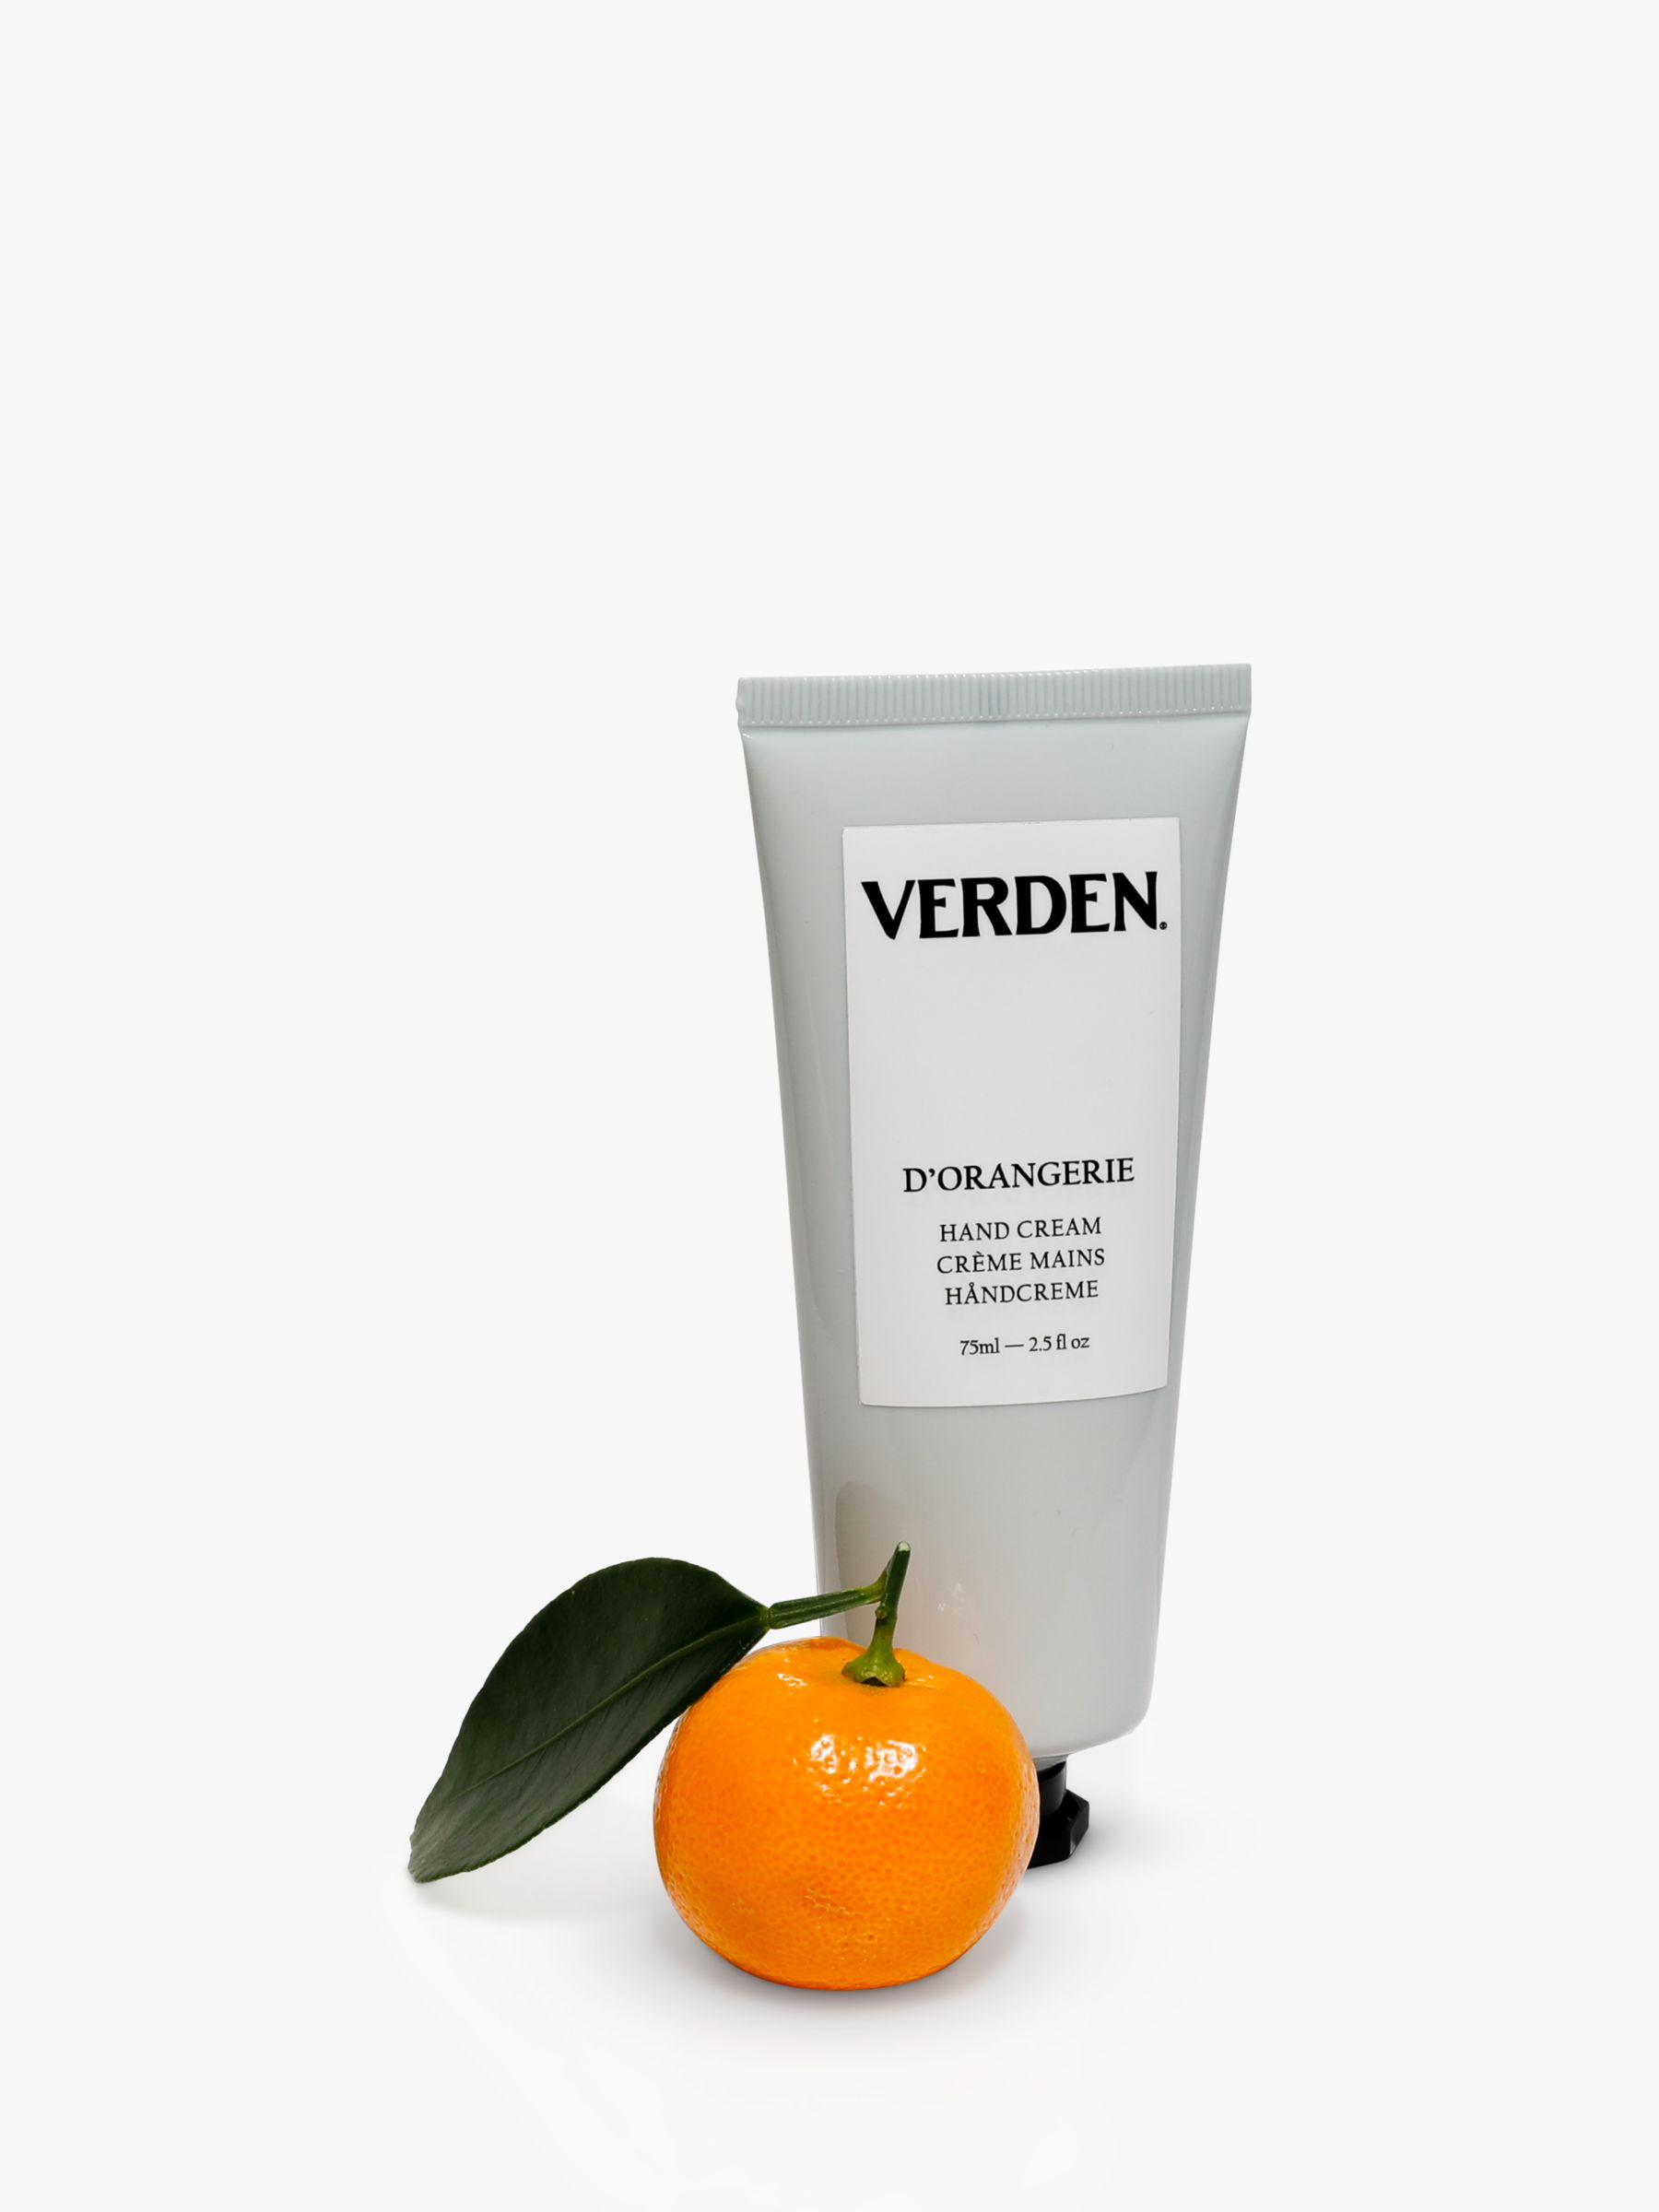 VERDEN D'Orangerire Hand Cream, 75ml 2